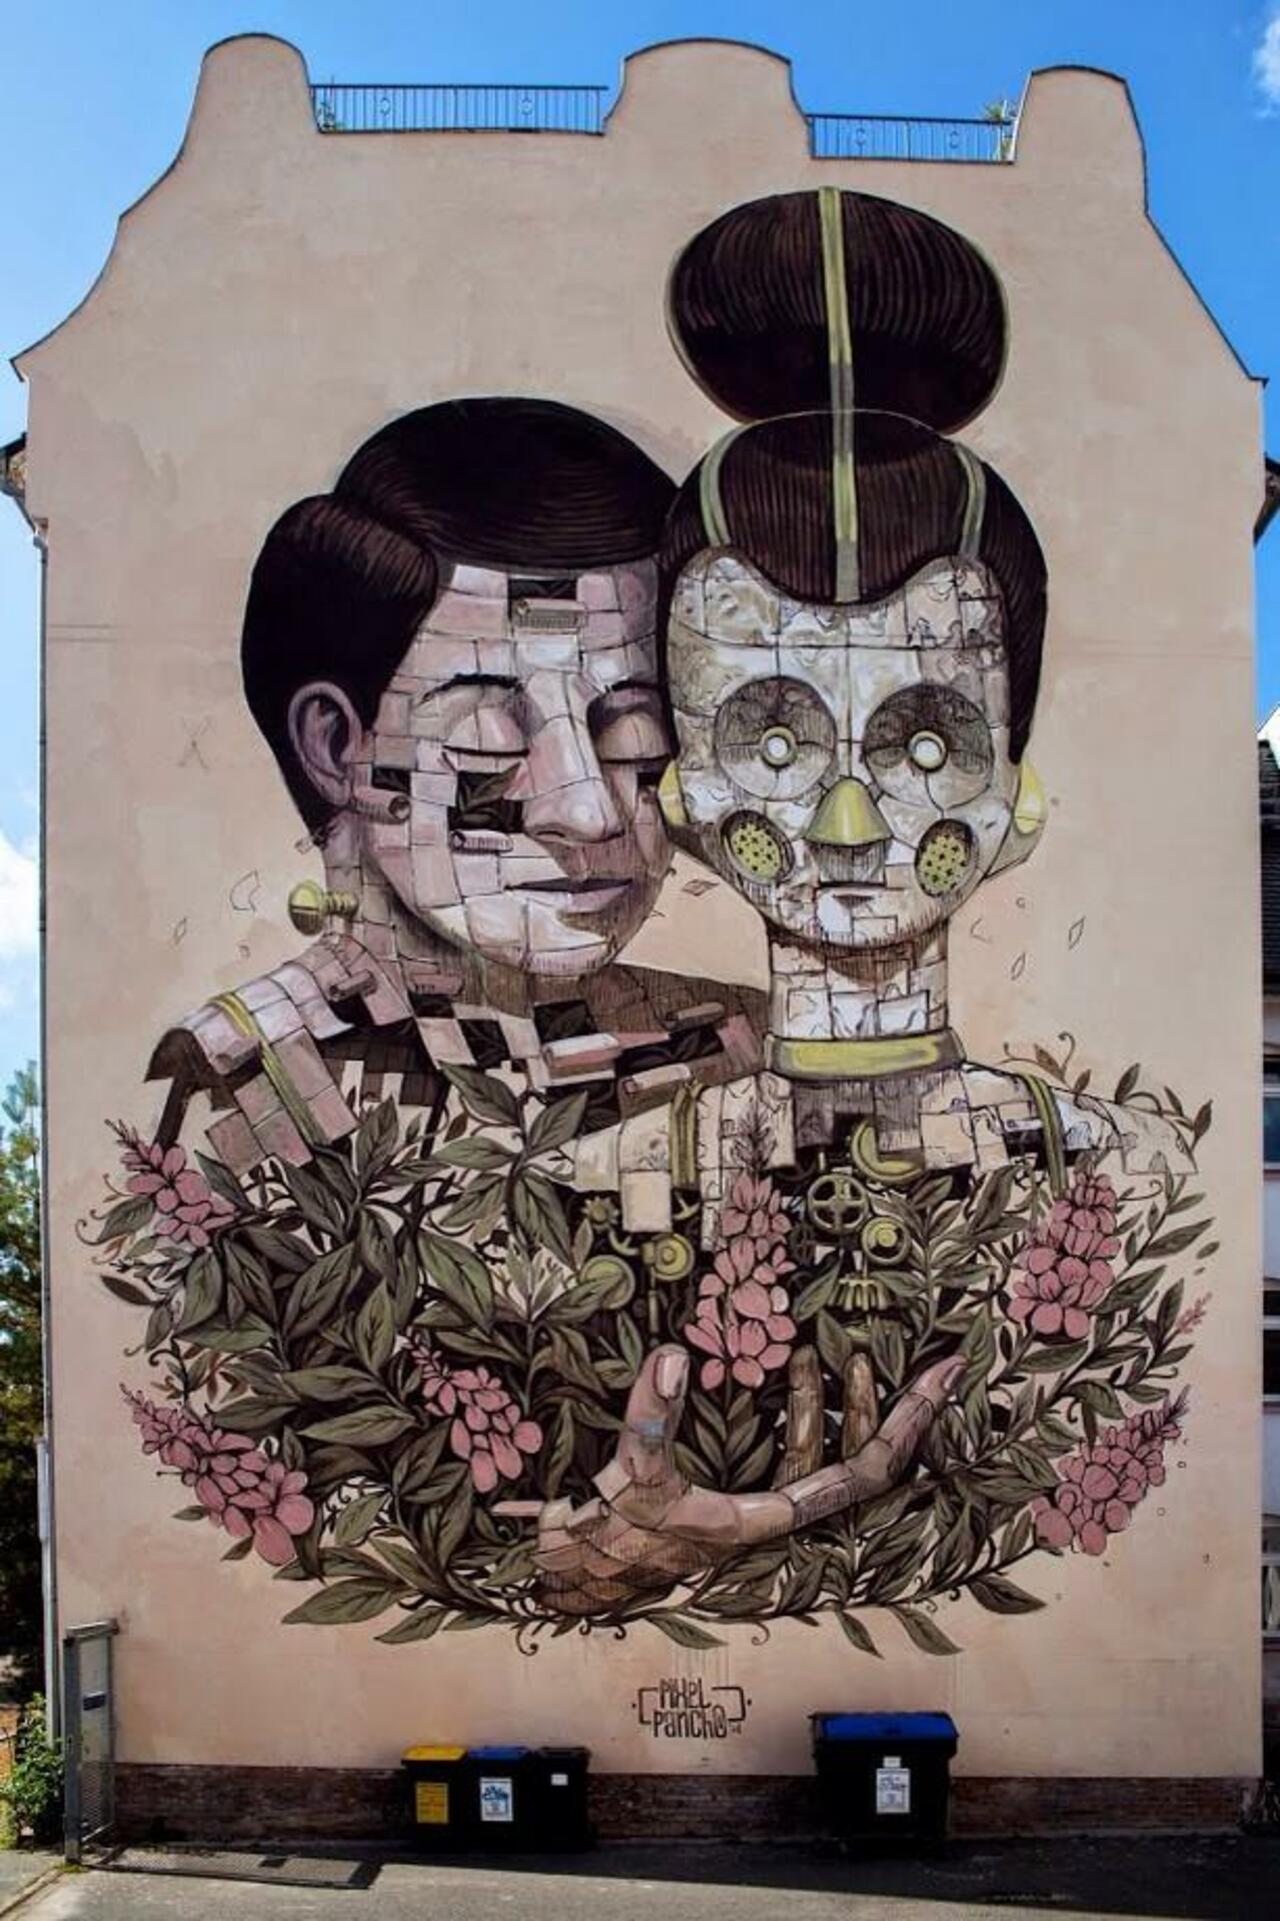 "@GoogleStreetArt: Street art in Halle (Freiimfelde), Germany, by Italian artist Pixel Pancho

#art #streetart http://t.co/L9HeH1pMD7"